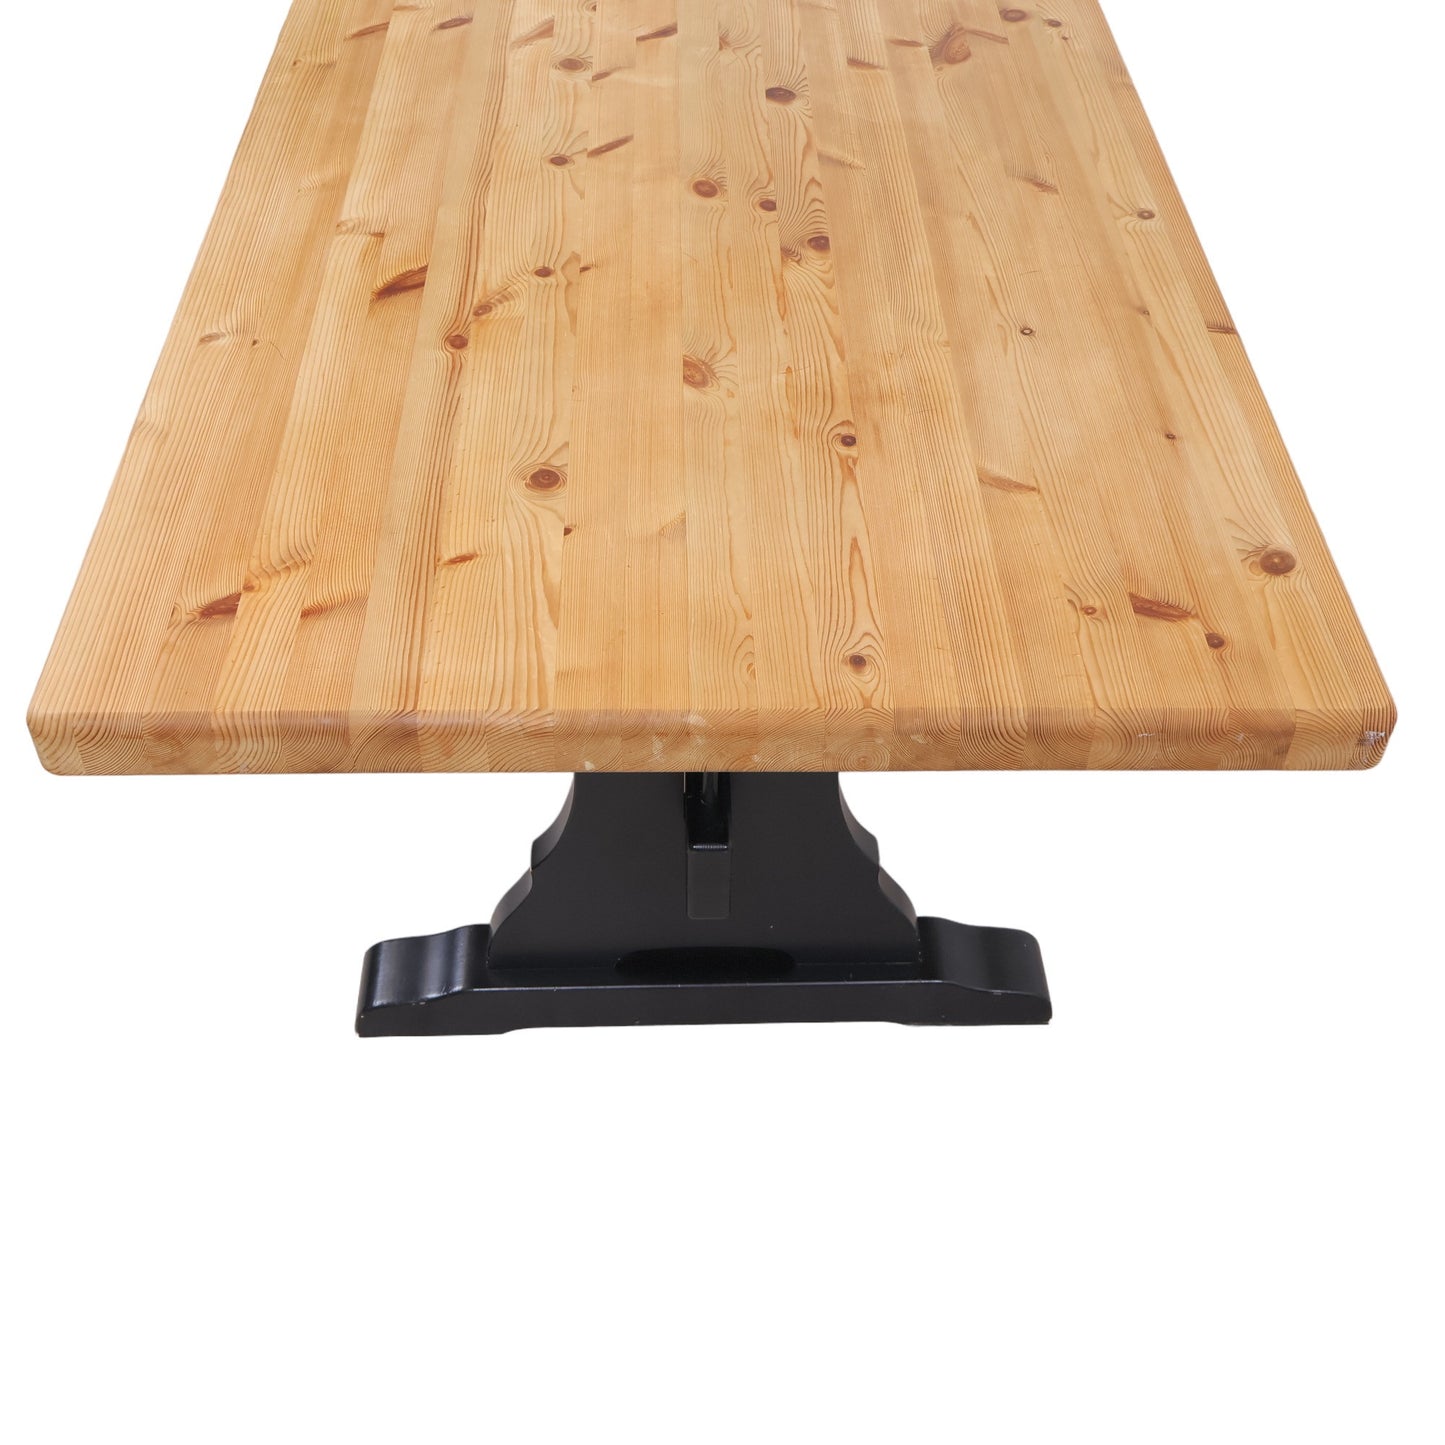 Solid retro-inspirert spisebord med lys heltre bordplate og sort understell